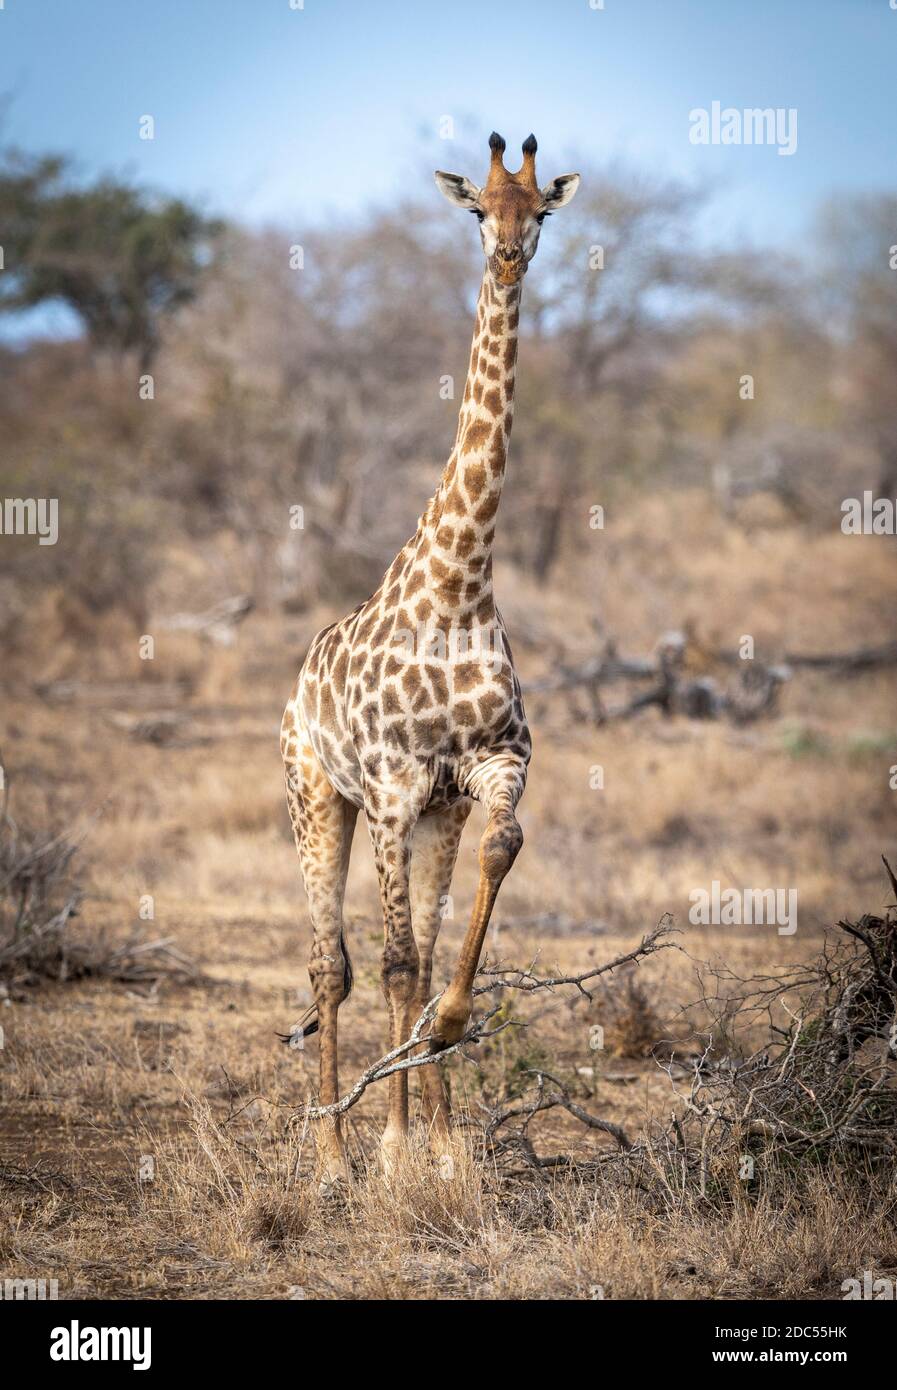 Jirafa hembra adulta de pie en arbusto seco de invierno con uno Pierna levantada en el Parque Kruger en Sudáfrica Foto de stock